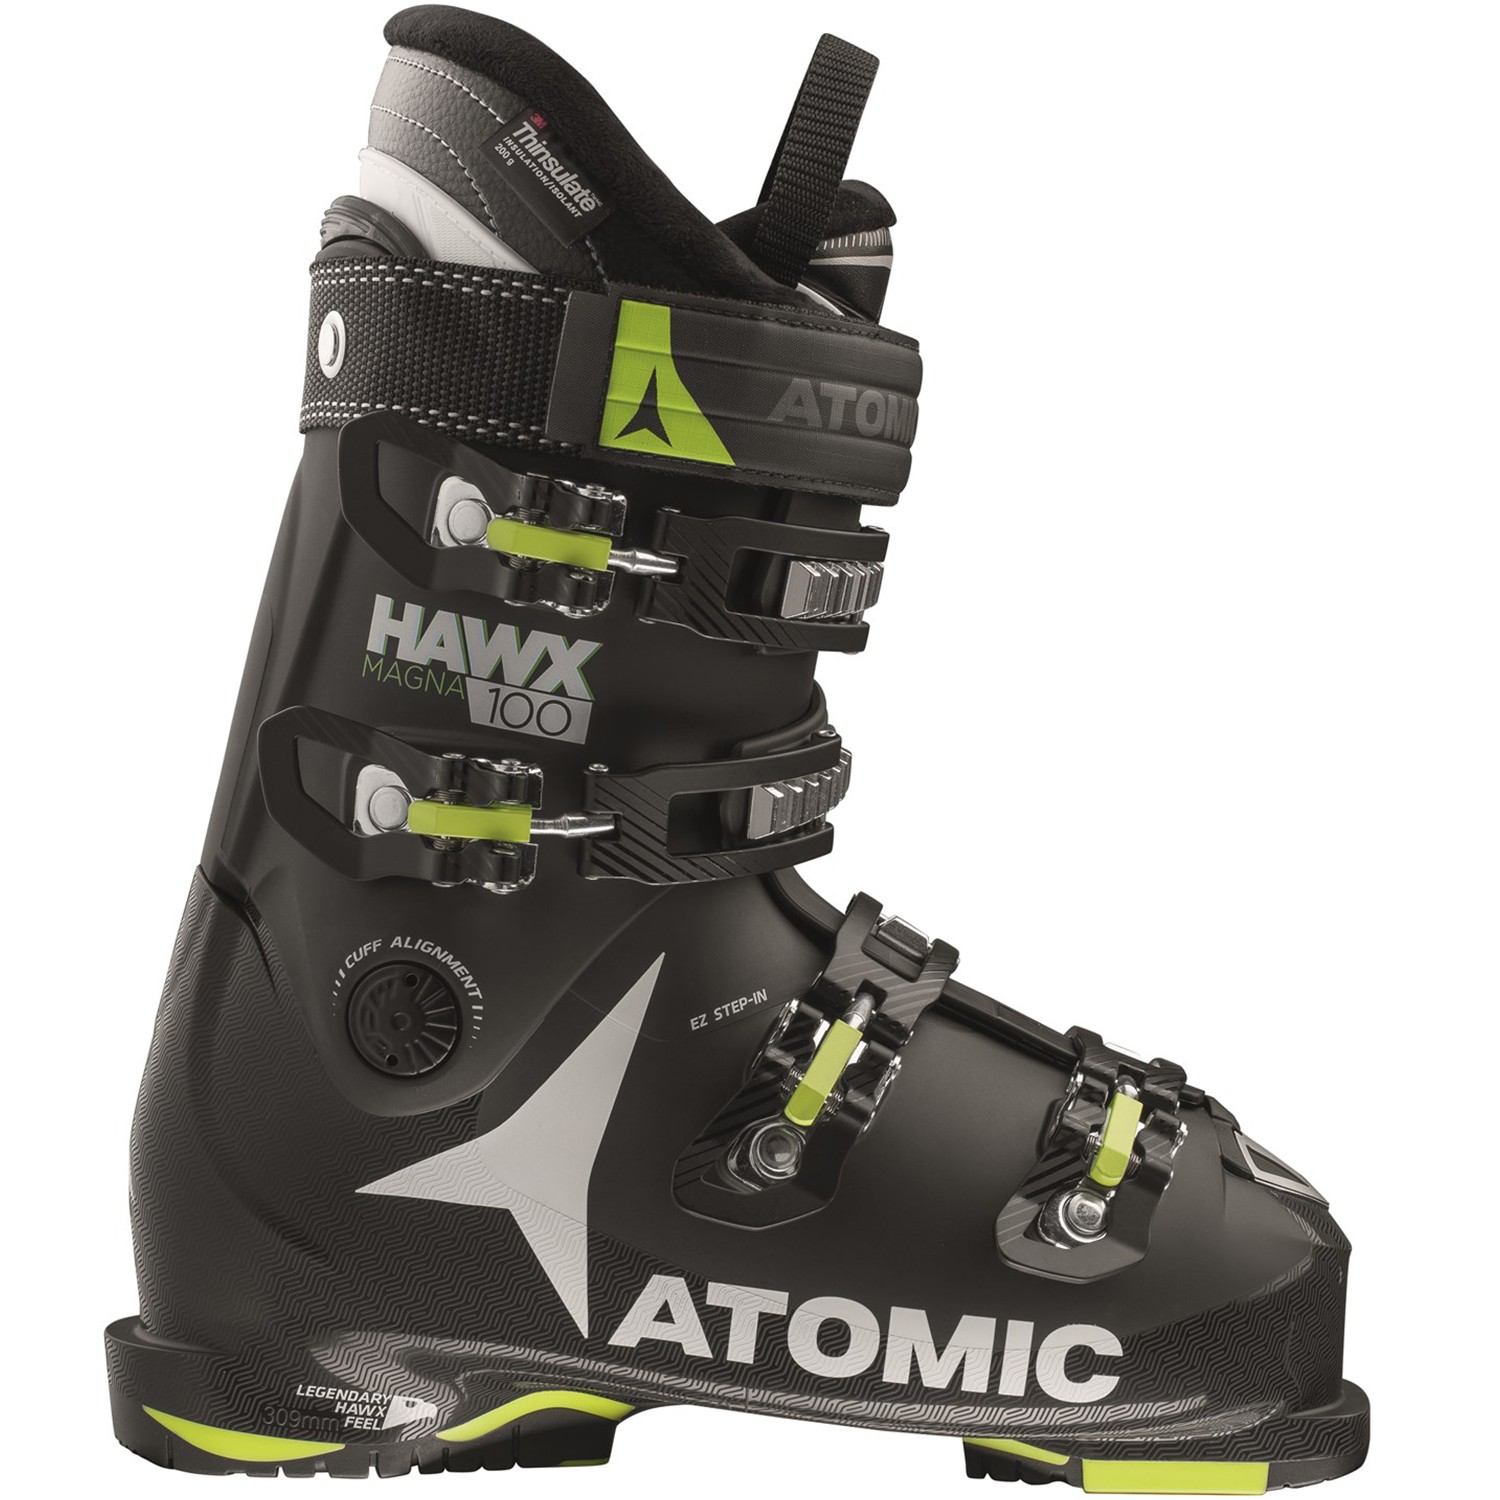 Atomic Hawx Magna 100 Ski Boots 2018 | The Ski Monster